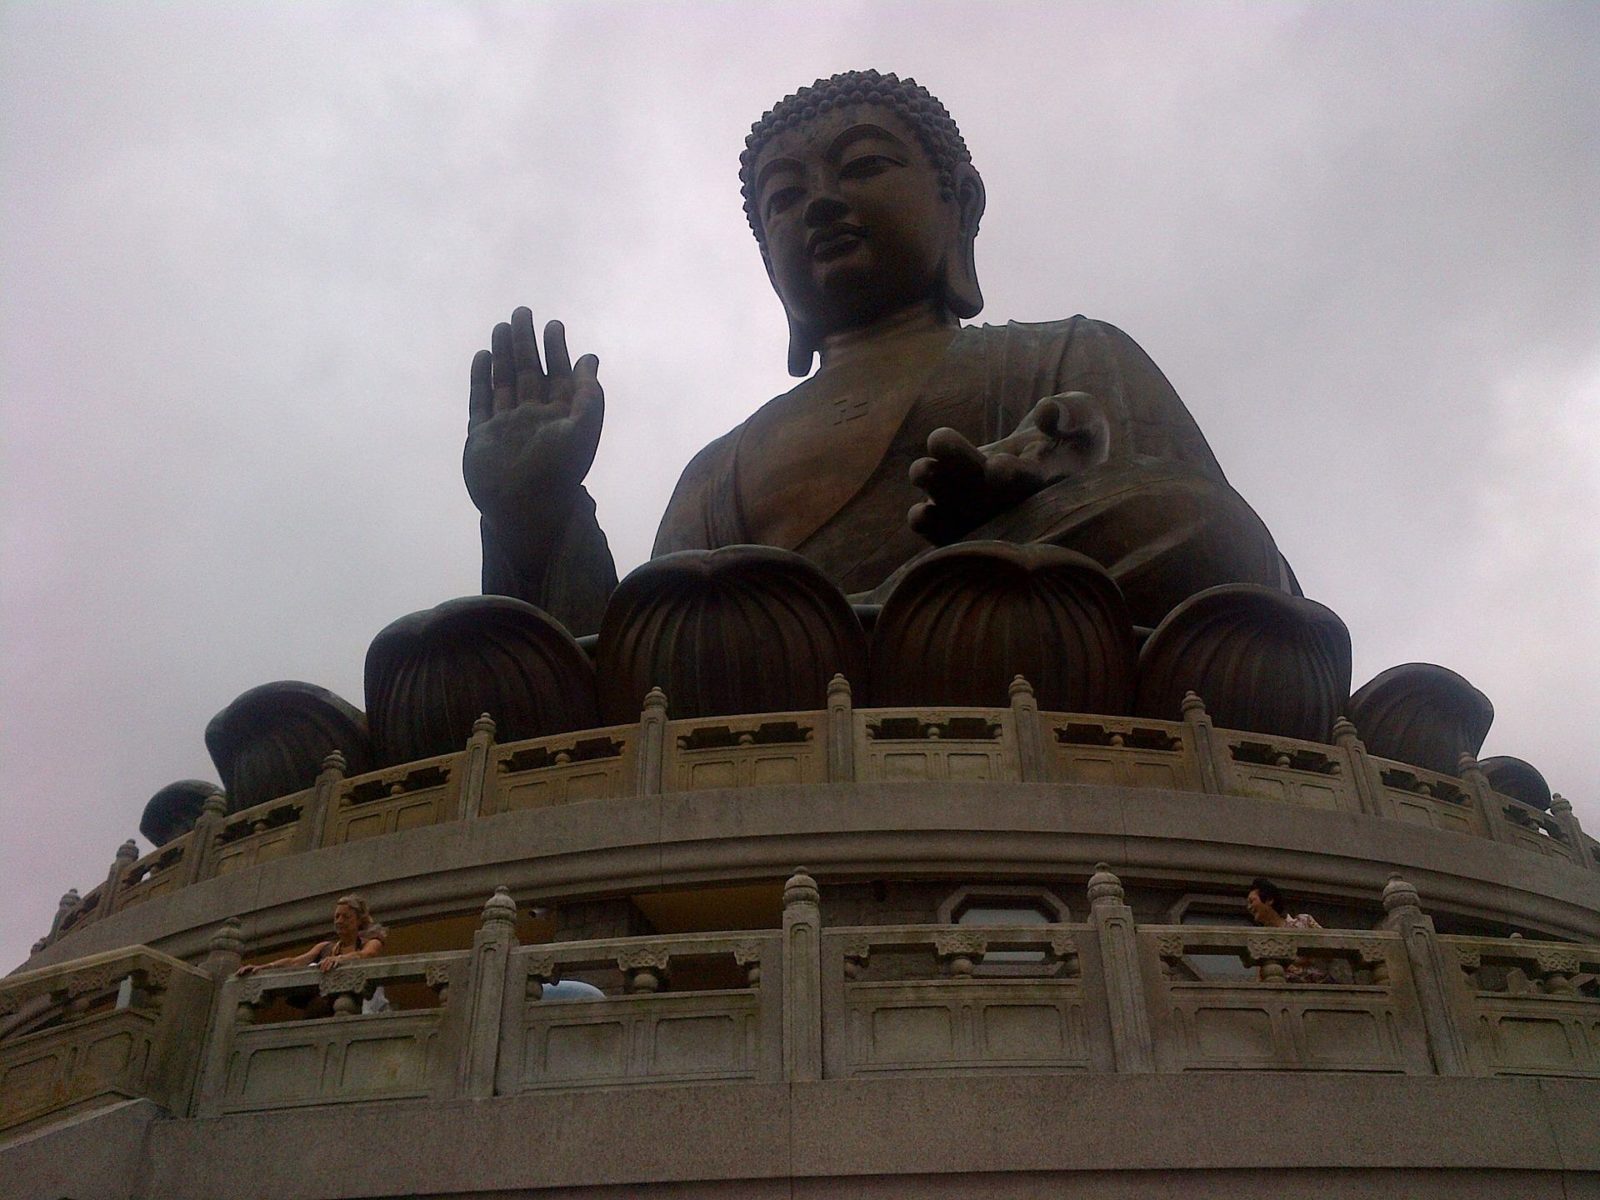 Big Buddha, Tian Tan Buddha on Lantau Island